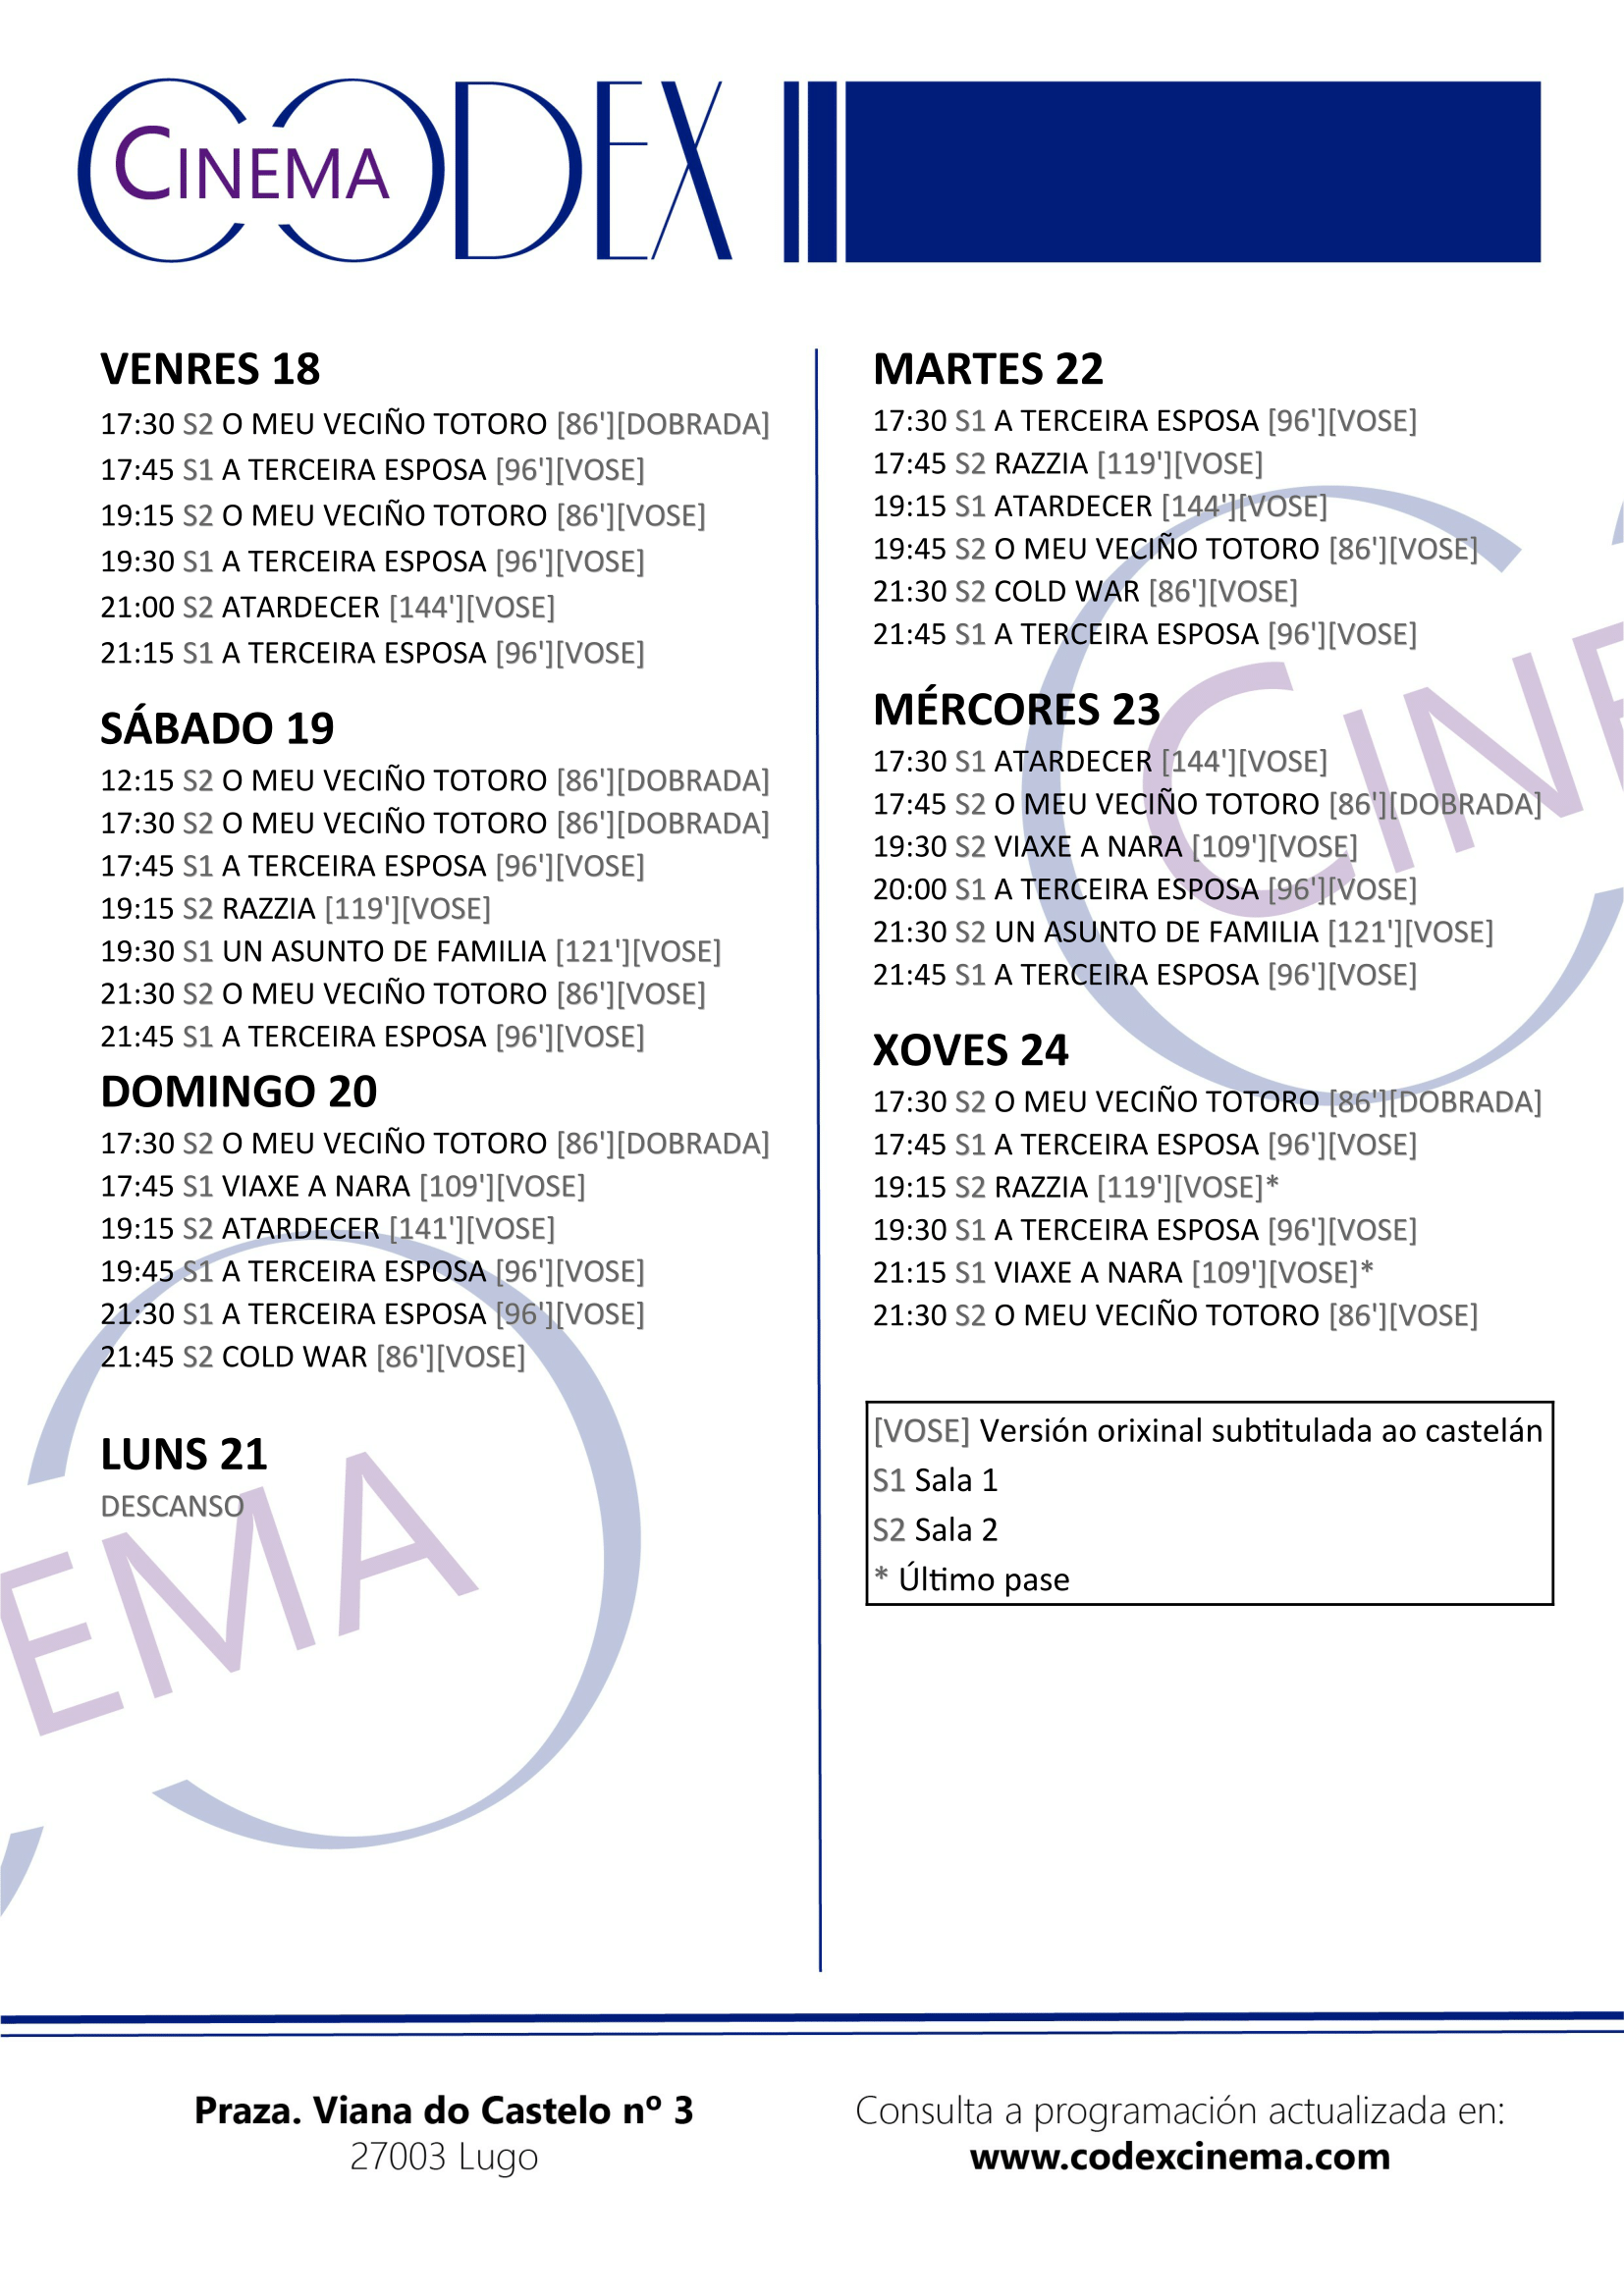 Programación do Codex Cinema de Lugo